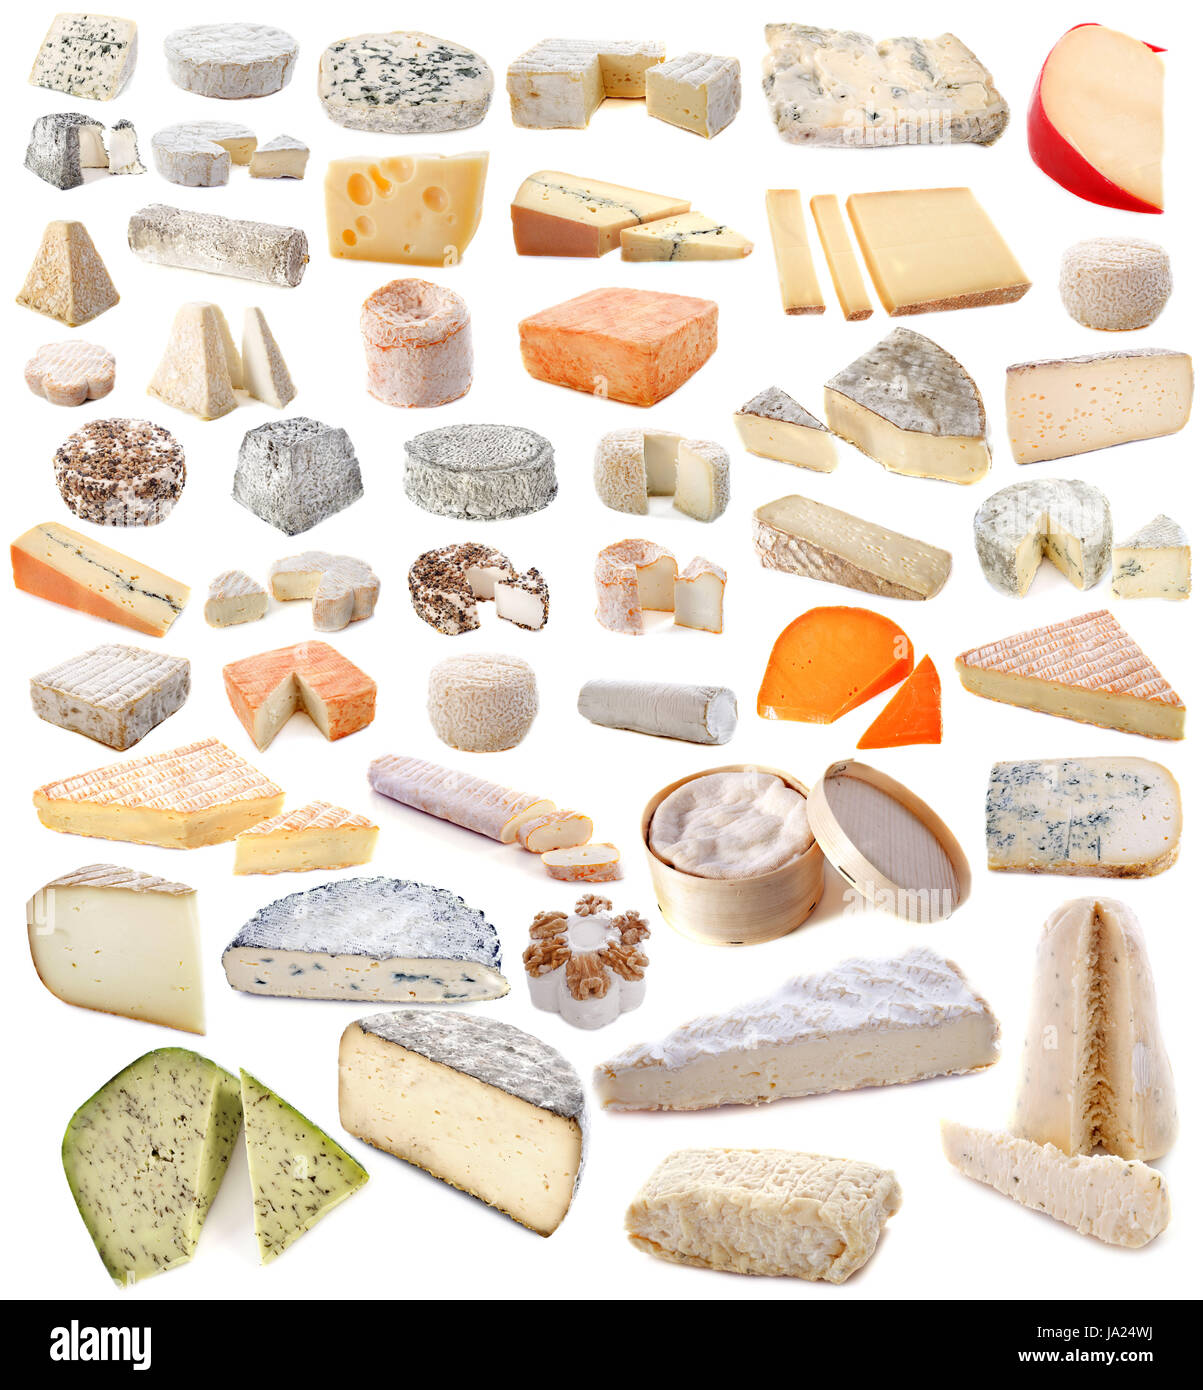 Le fromage, variété, spécialité, fromage de chèvre, de l'alimentation, aliment, poivre, studio, matières, Banque D'Images